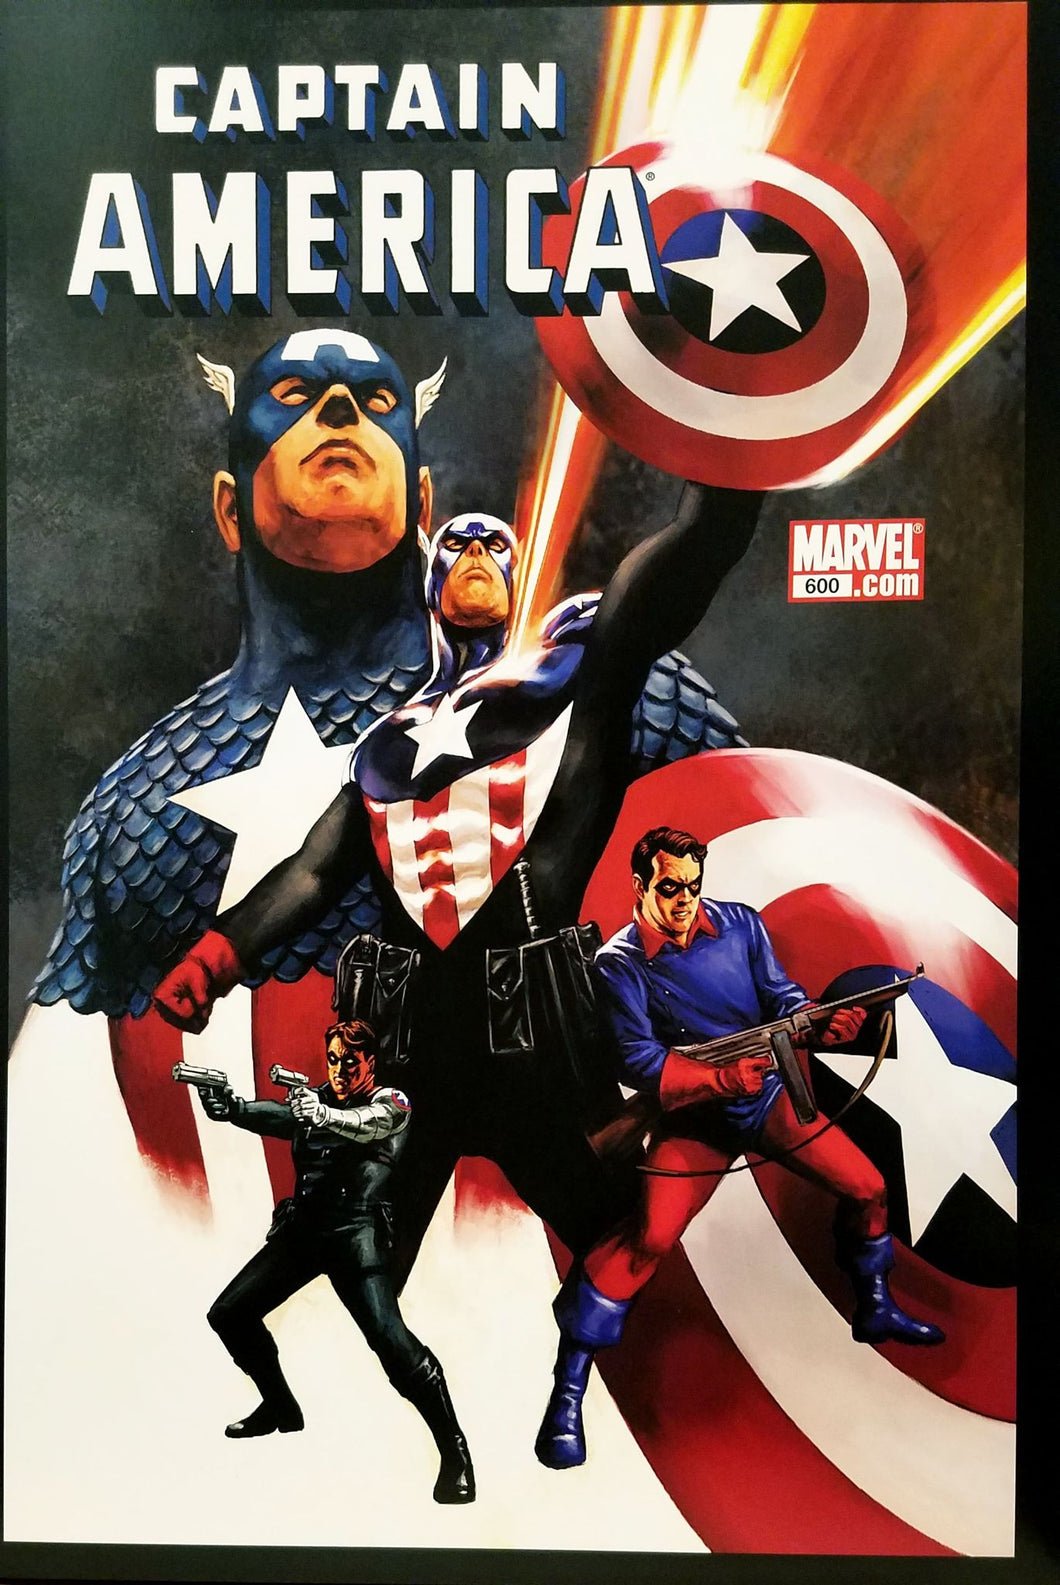 Captain America #600 12x16 FRAMED Art Poster Print by Steve Epting, Marvel Comics